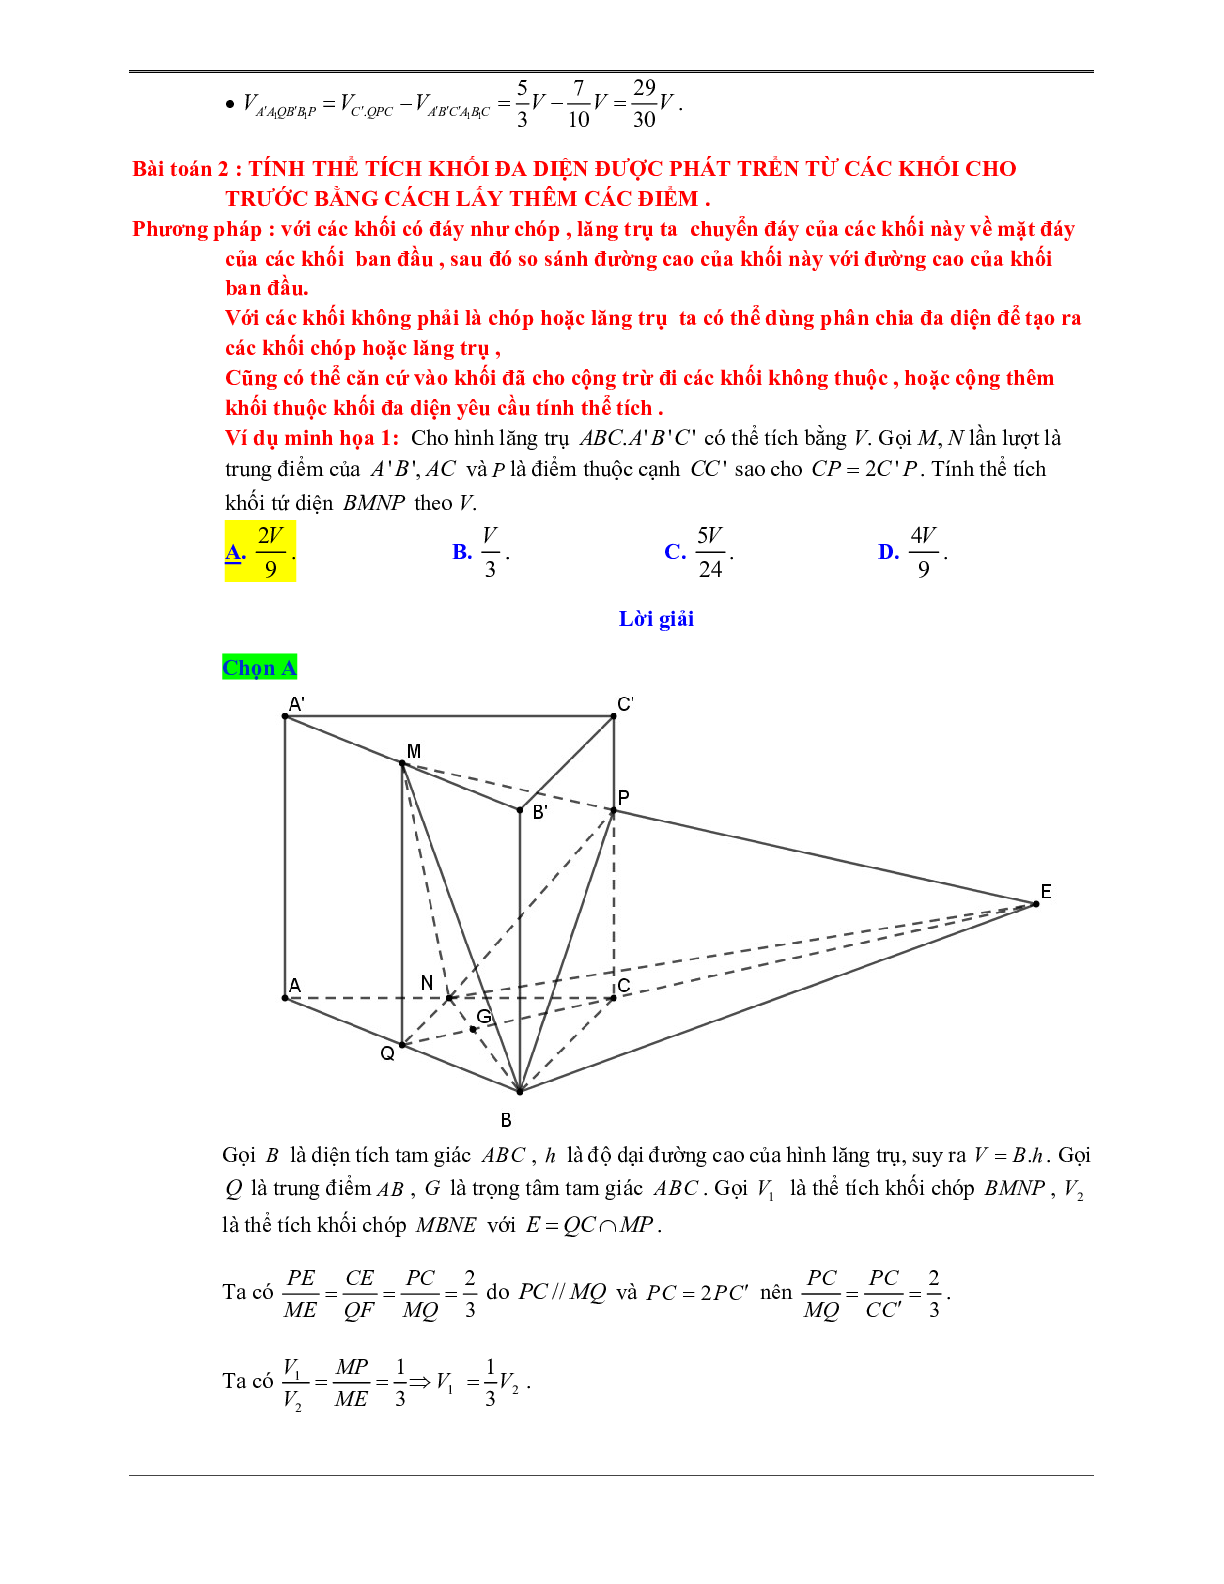 50 Bài tập Khái niệm về thể tích trong phân chia khối đa diện (có đáp án) - Toán 12 (trang 6)